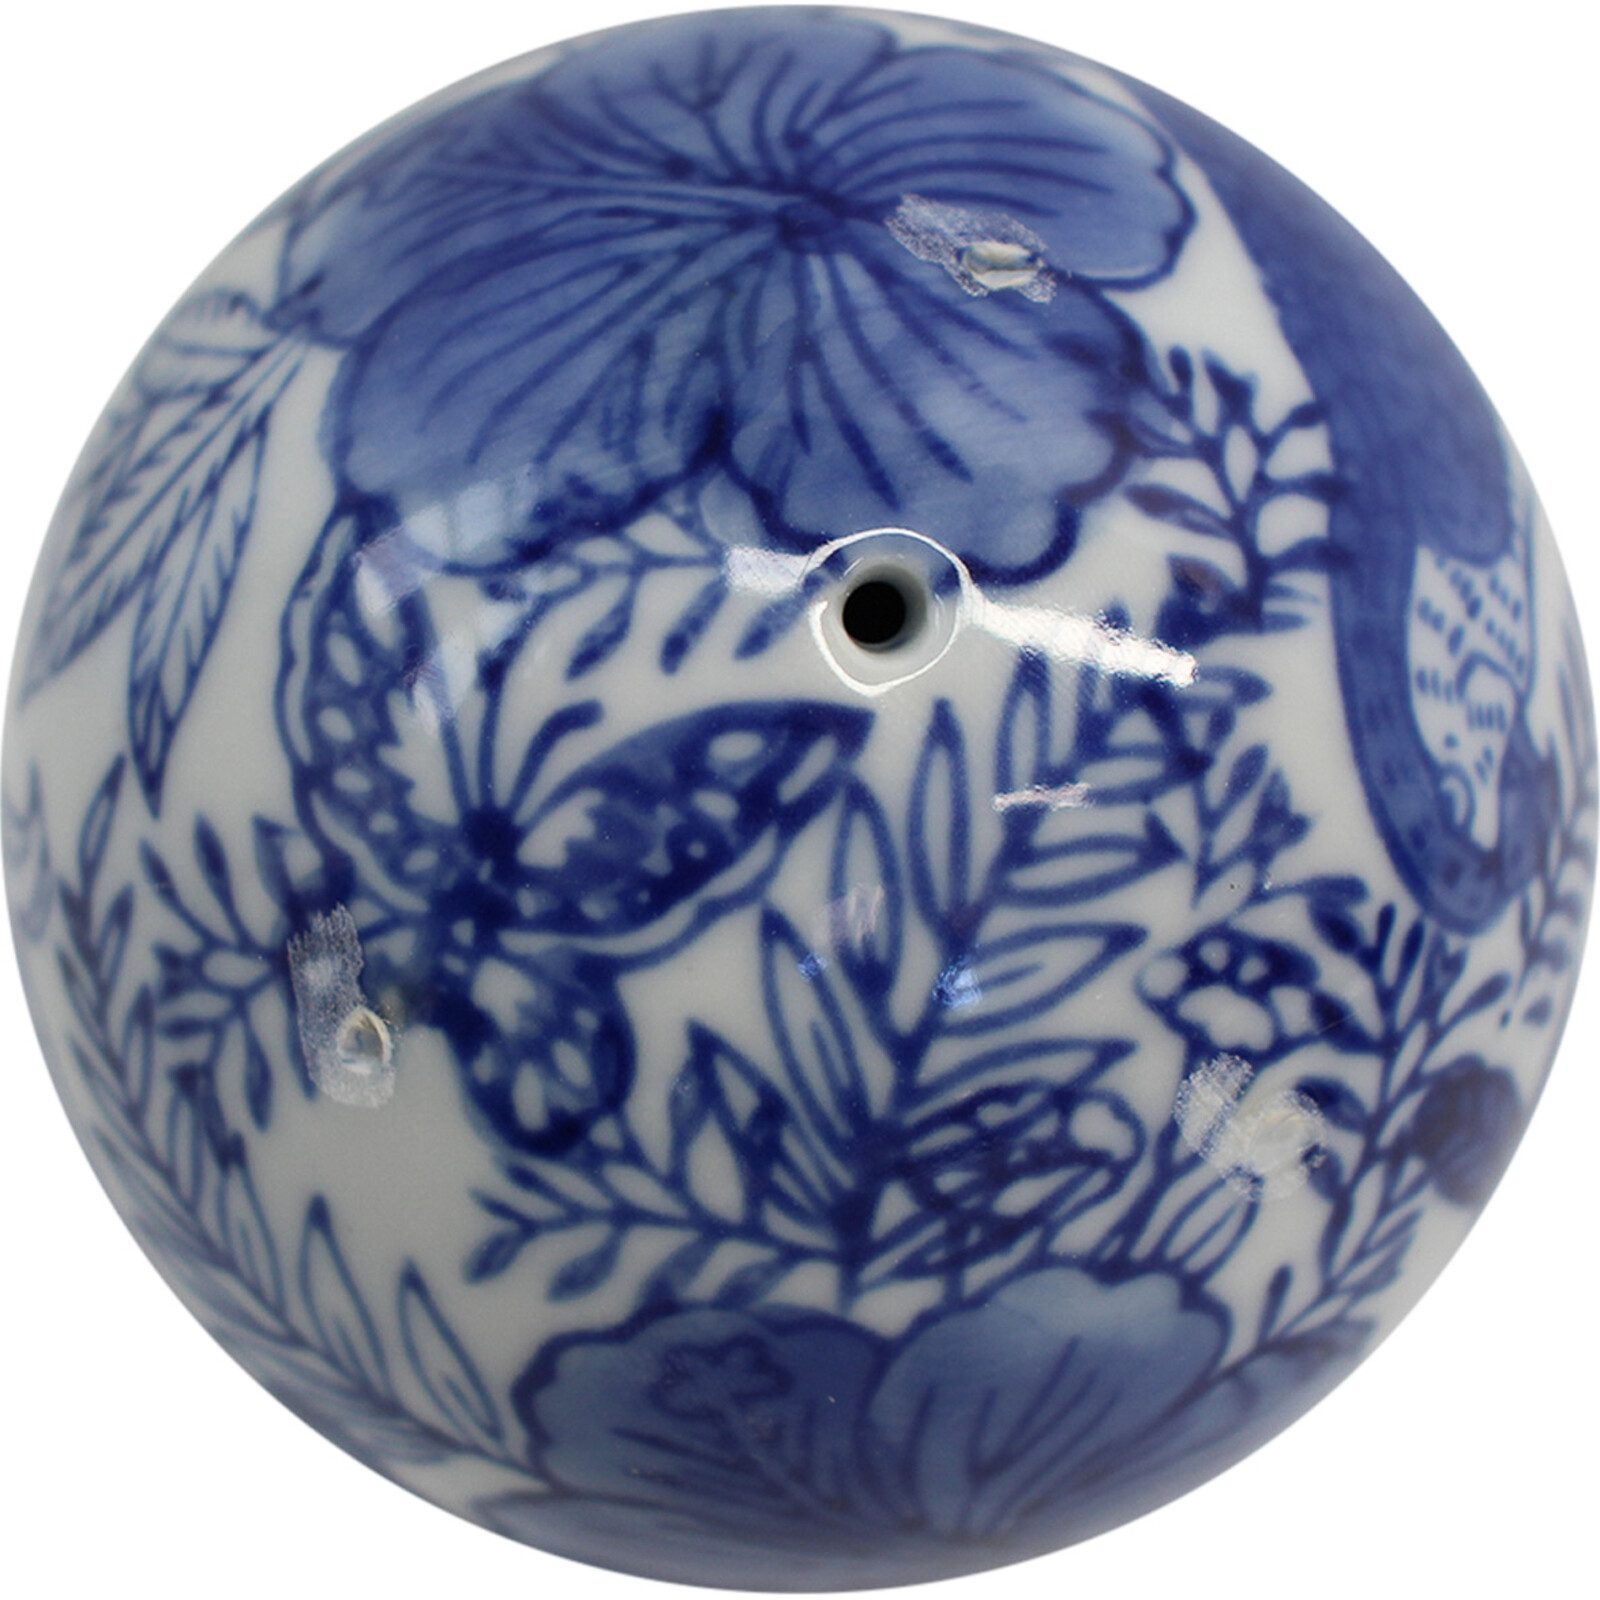 Porcelain Parrot Balls S/3